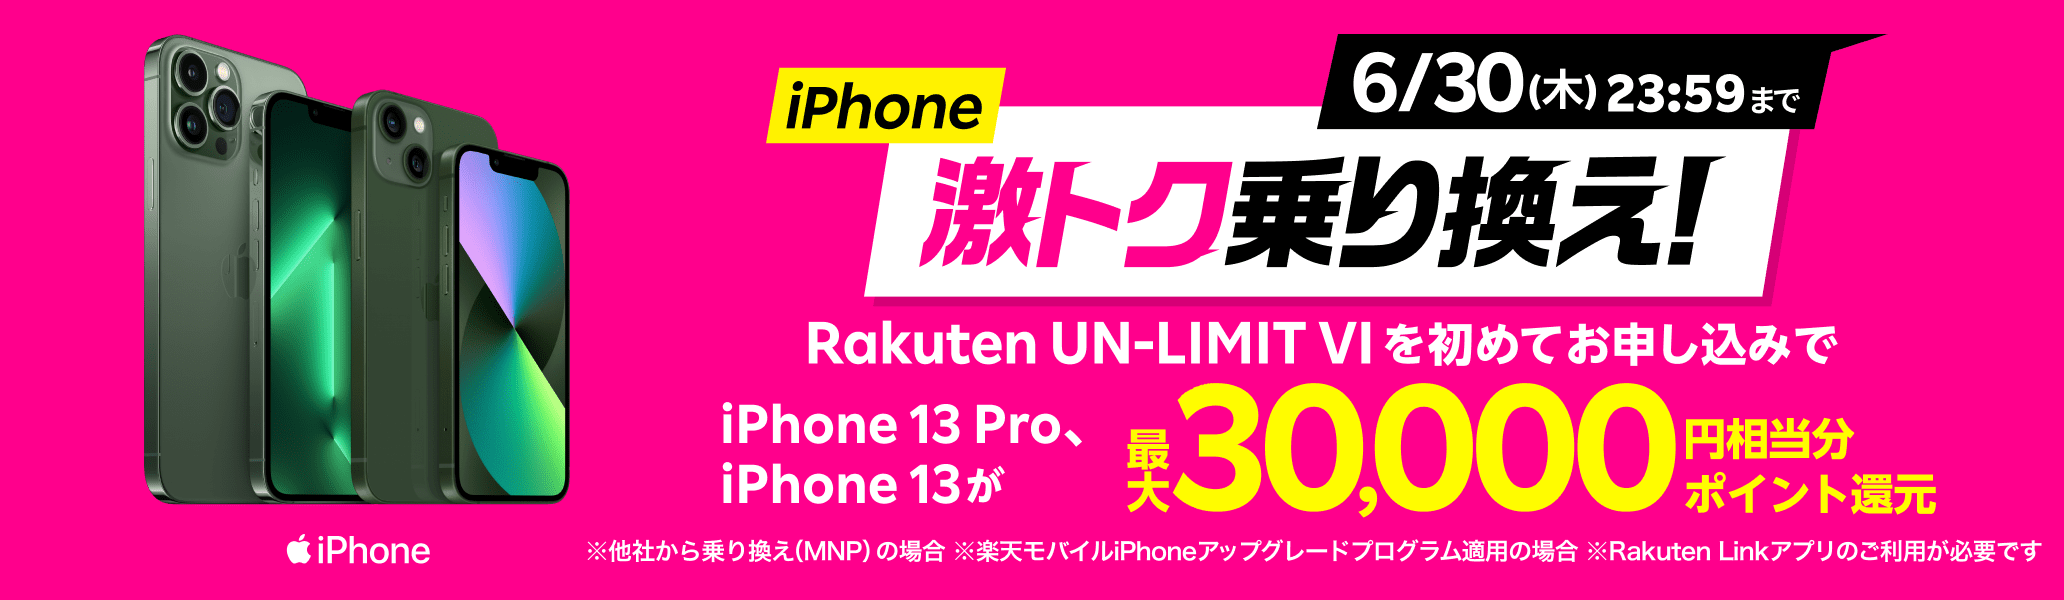 iPhone激トク乗り換え！Rakuten UN-LIMIT VIを初めてお申し込みでiPhone13 pro、iPhone13が最大30,000円相当分ポイント還元※ 他社から乗り換え（MNP）の場合等、他条件有